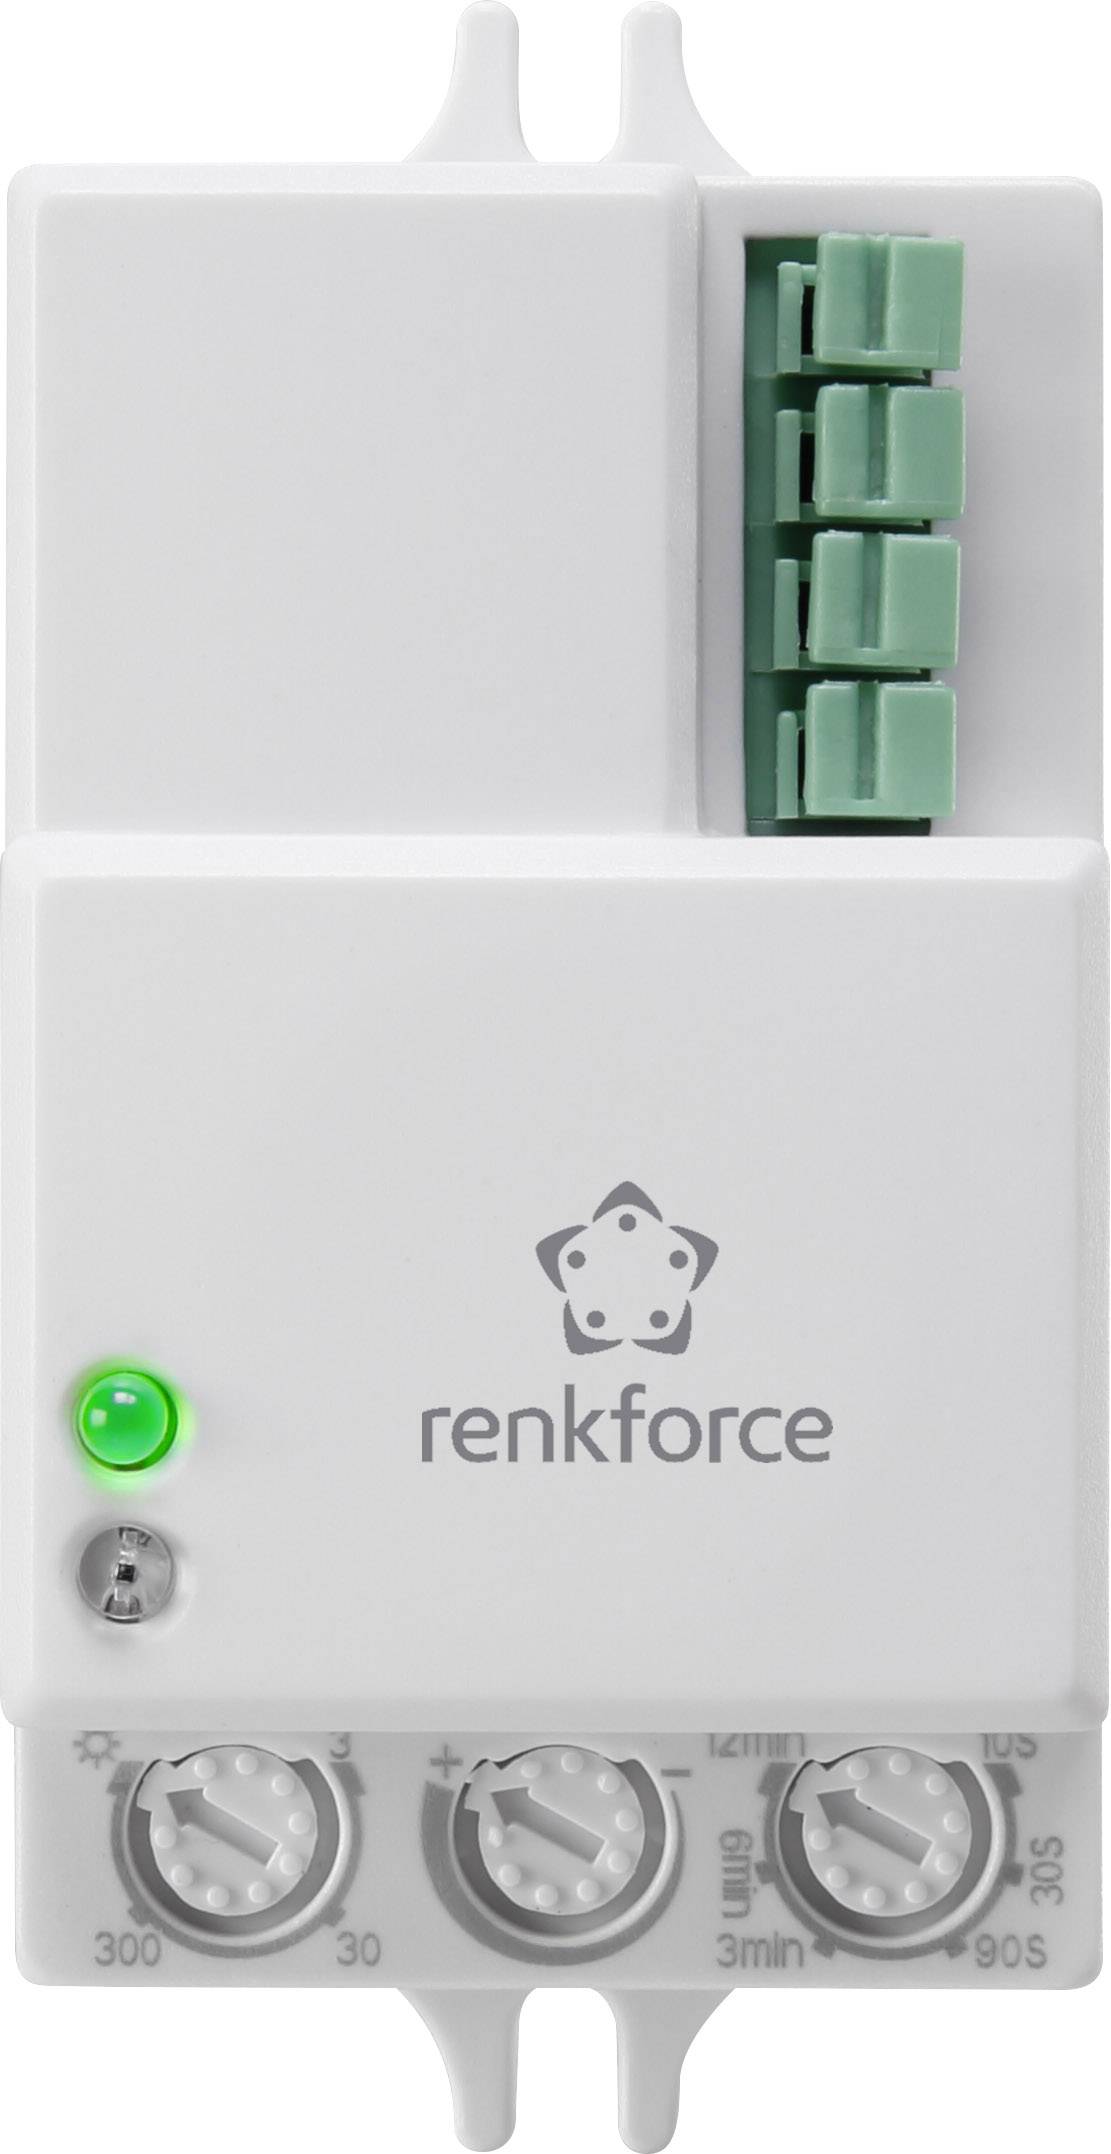 Station d'accueil pour disque dur Renkforce rf-docking-08 avec fonction  clonage, avec fonction effacement – Conrad Electronic Suisse